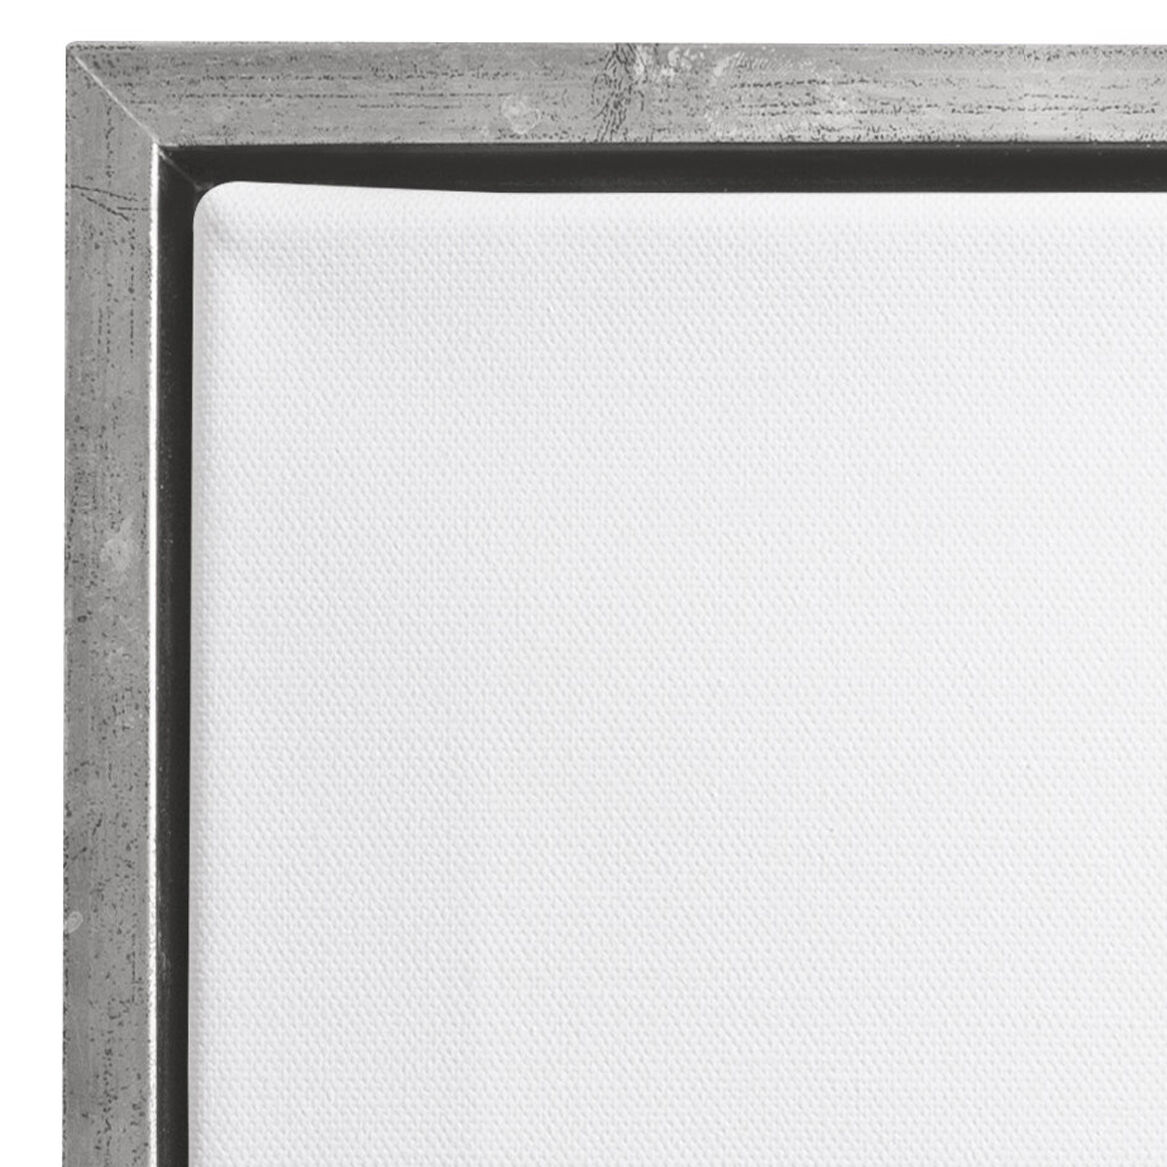 NEU Keilrahmen in Bilderrahmen mit Schattenfuge Silber, 20 x 20 cm KR + Schrauben - 1 Stück Bild 2